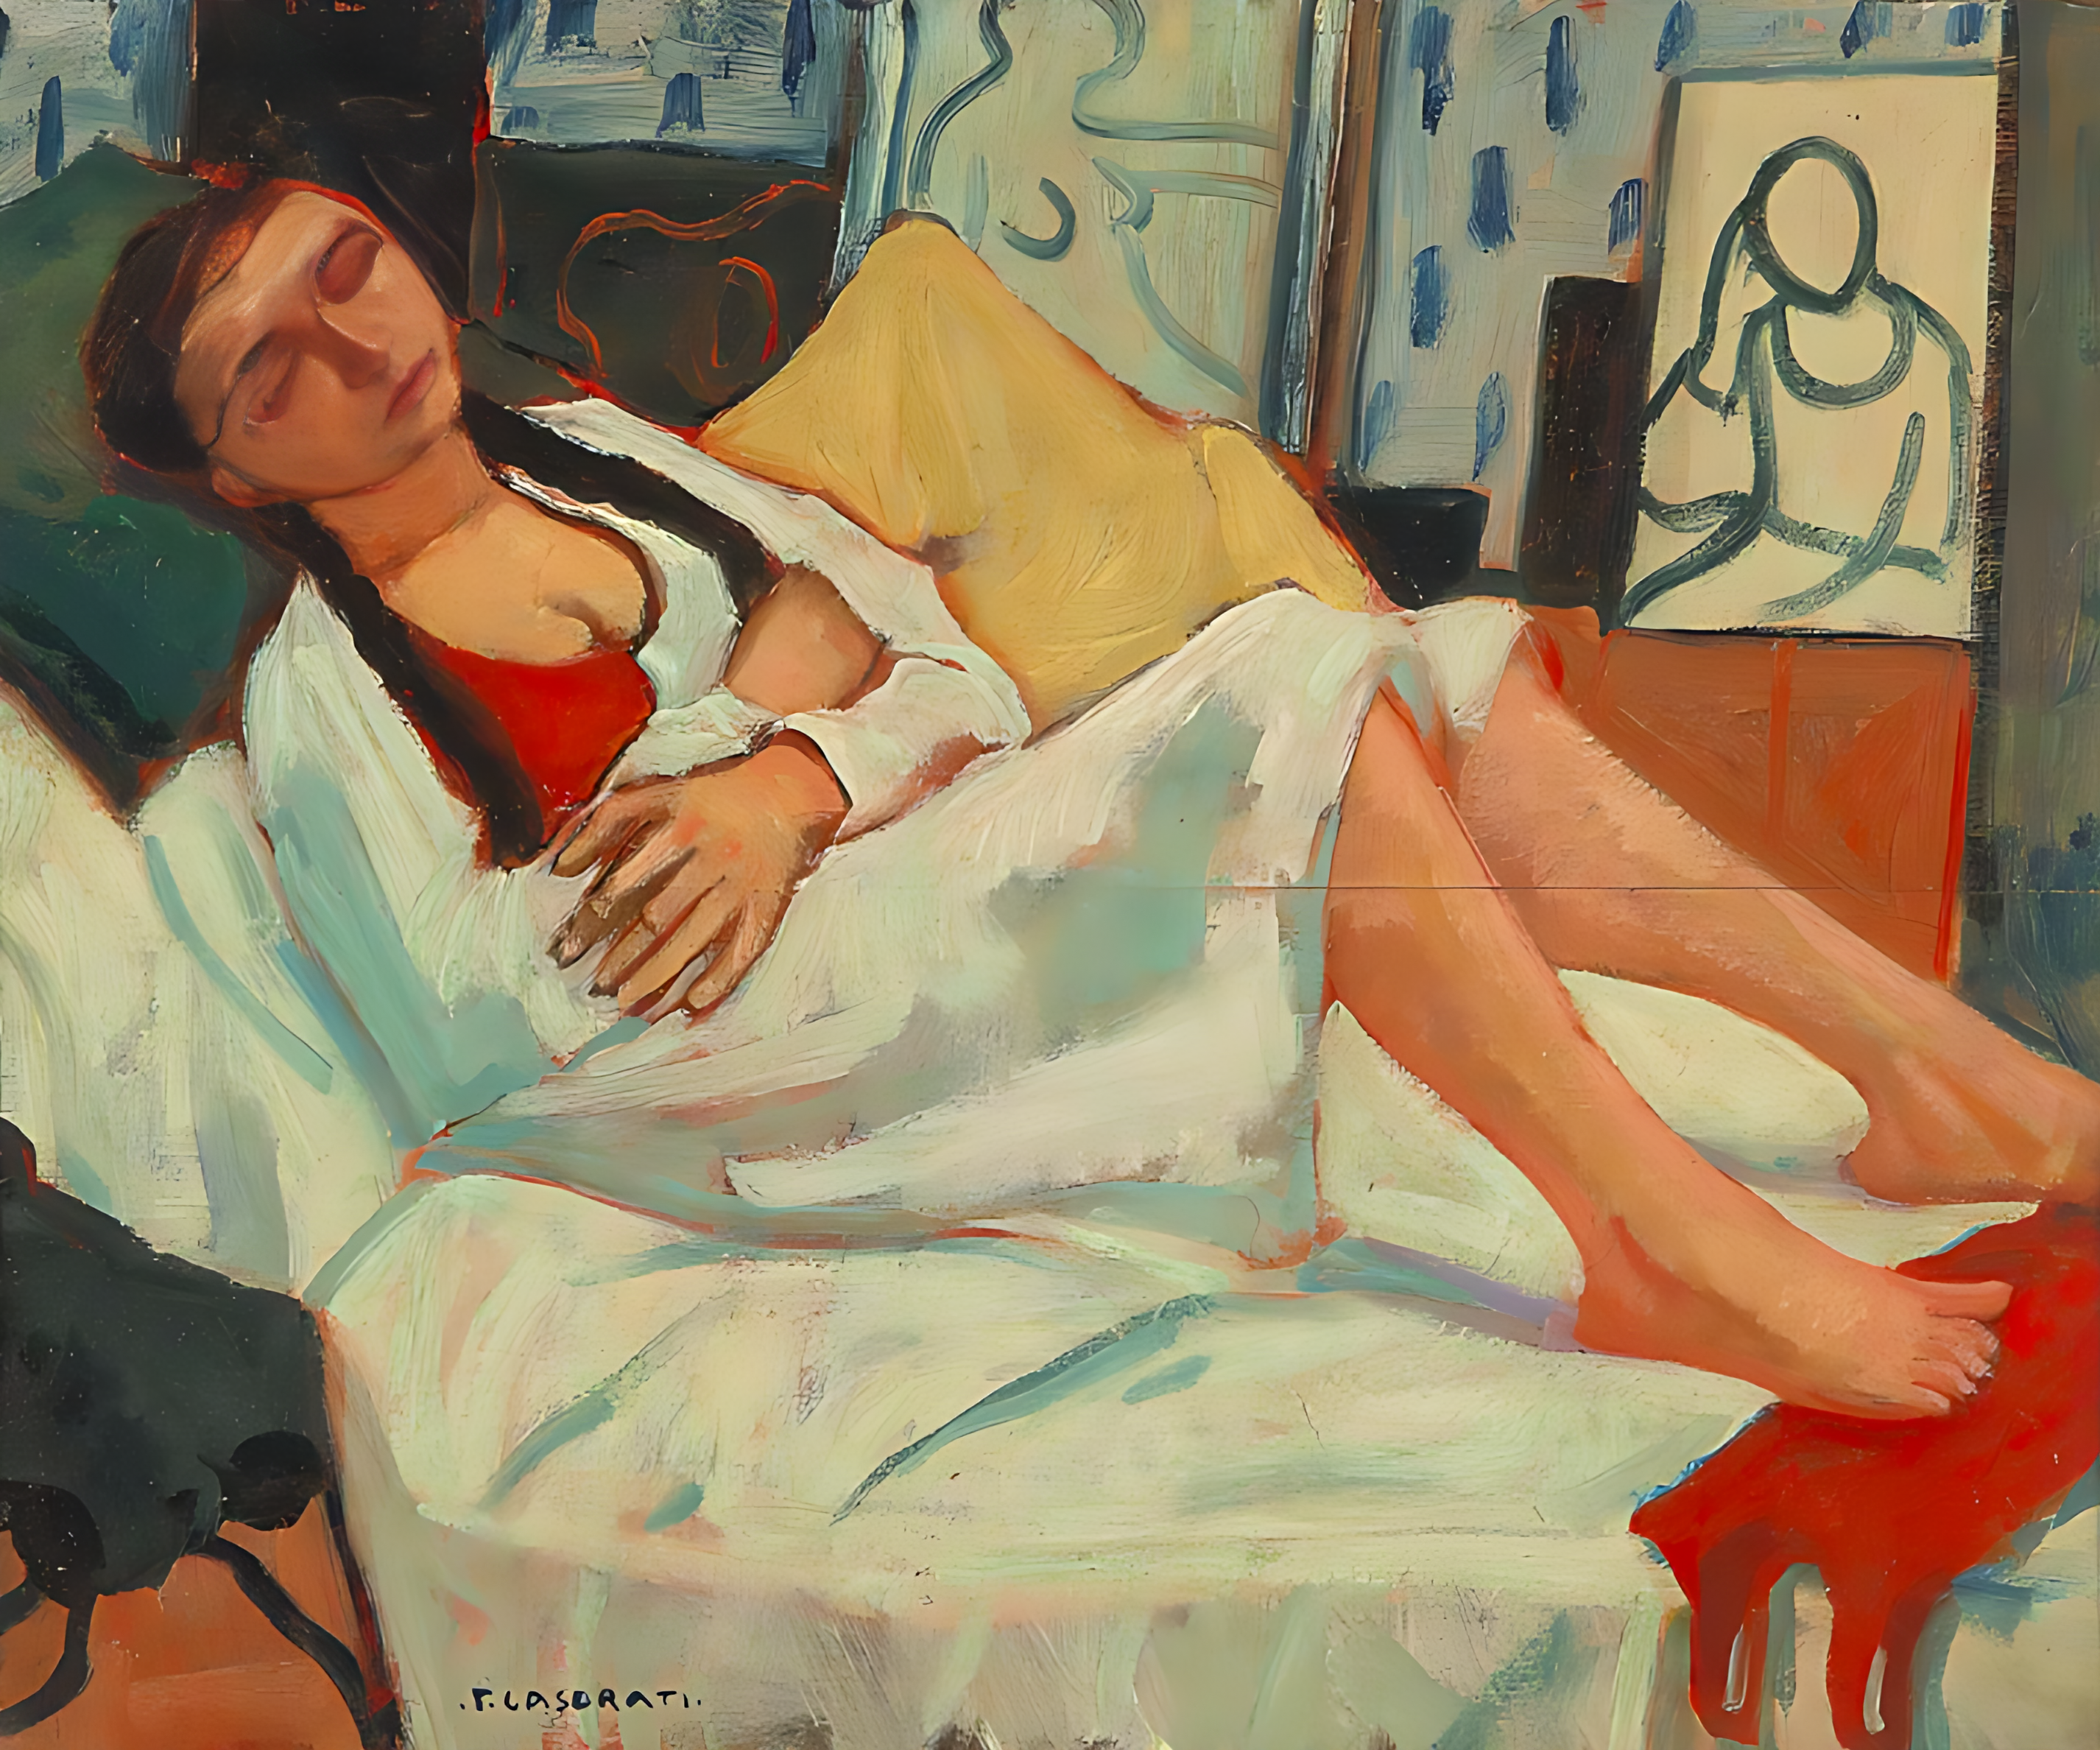 Ragazza sul letto - Felice Casorati - 1942 